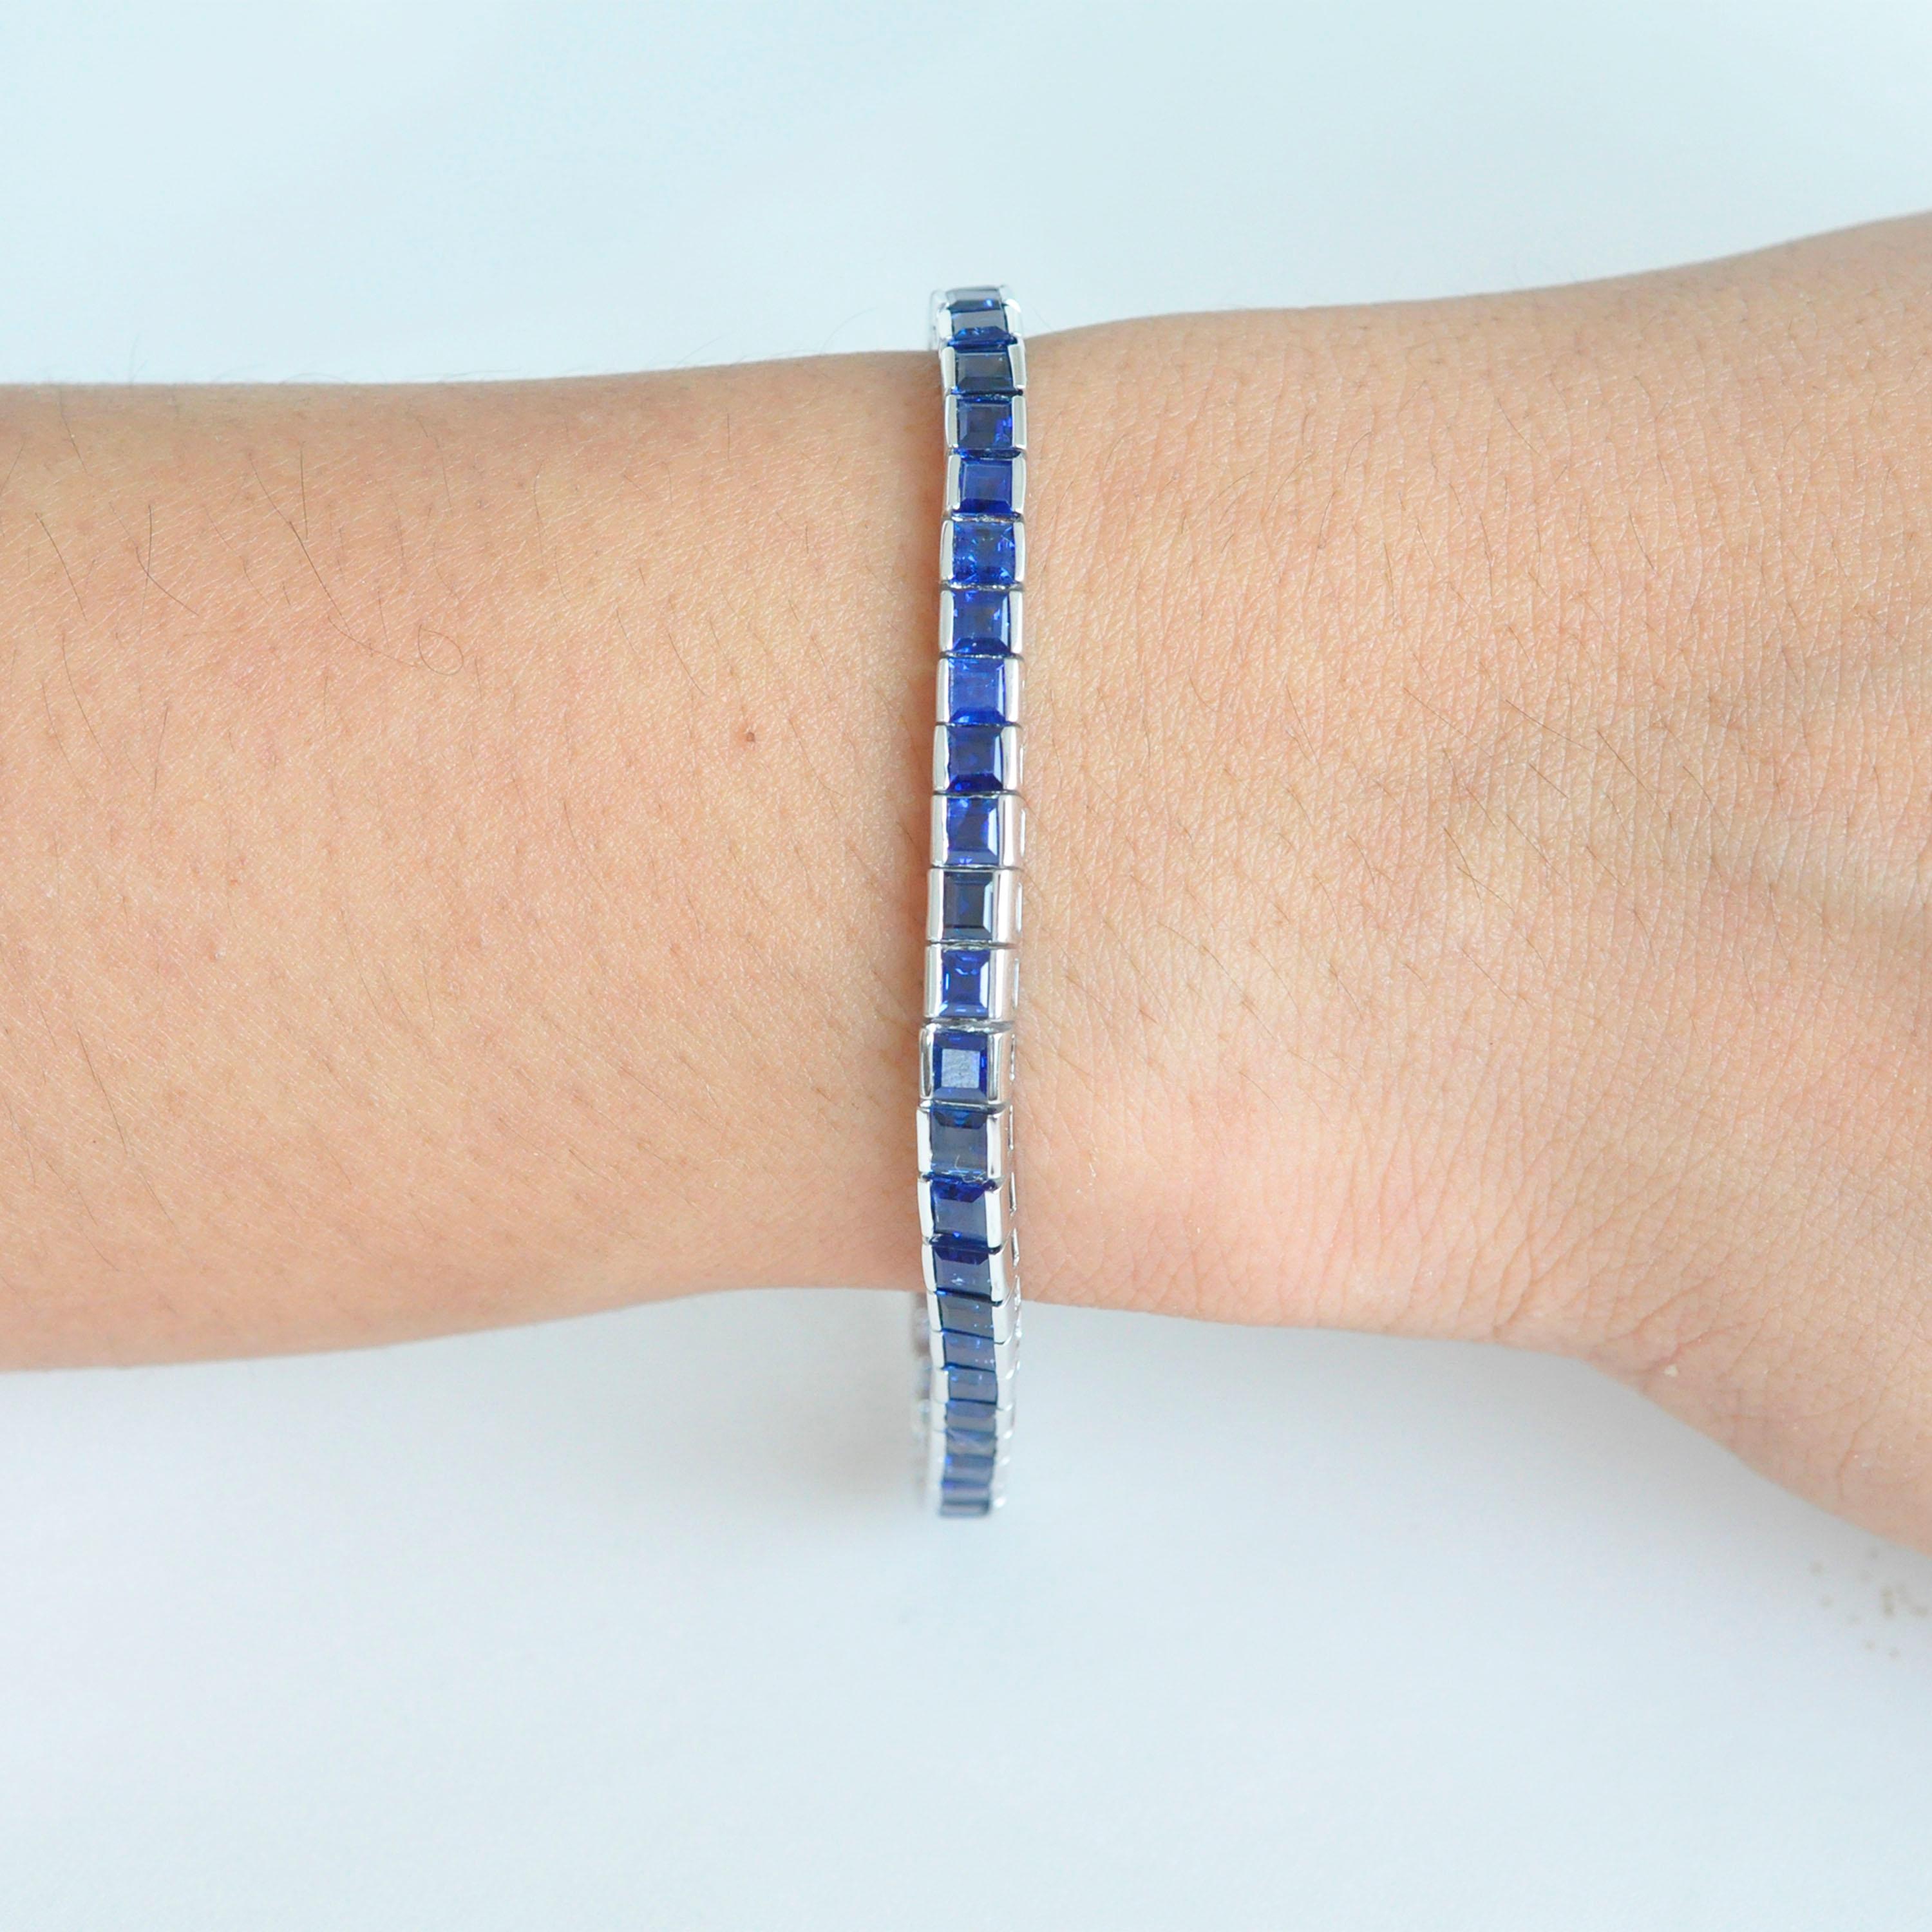 bracelet ligne tennis en or blanc 18 carats, saphir bleu naturel carré de 14,04 carats.

Ce magistral bracelet tennis en saphirs bleus royaux est superbe. Les 49 saphirs bleus carrés identiques, d'une taille de 4 mm au centre et passant à 3,5 mm au